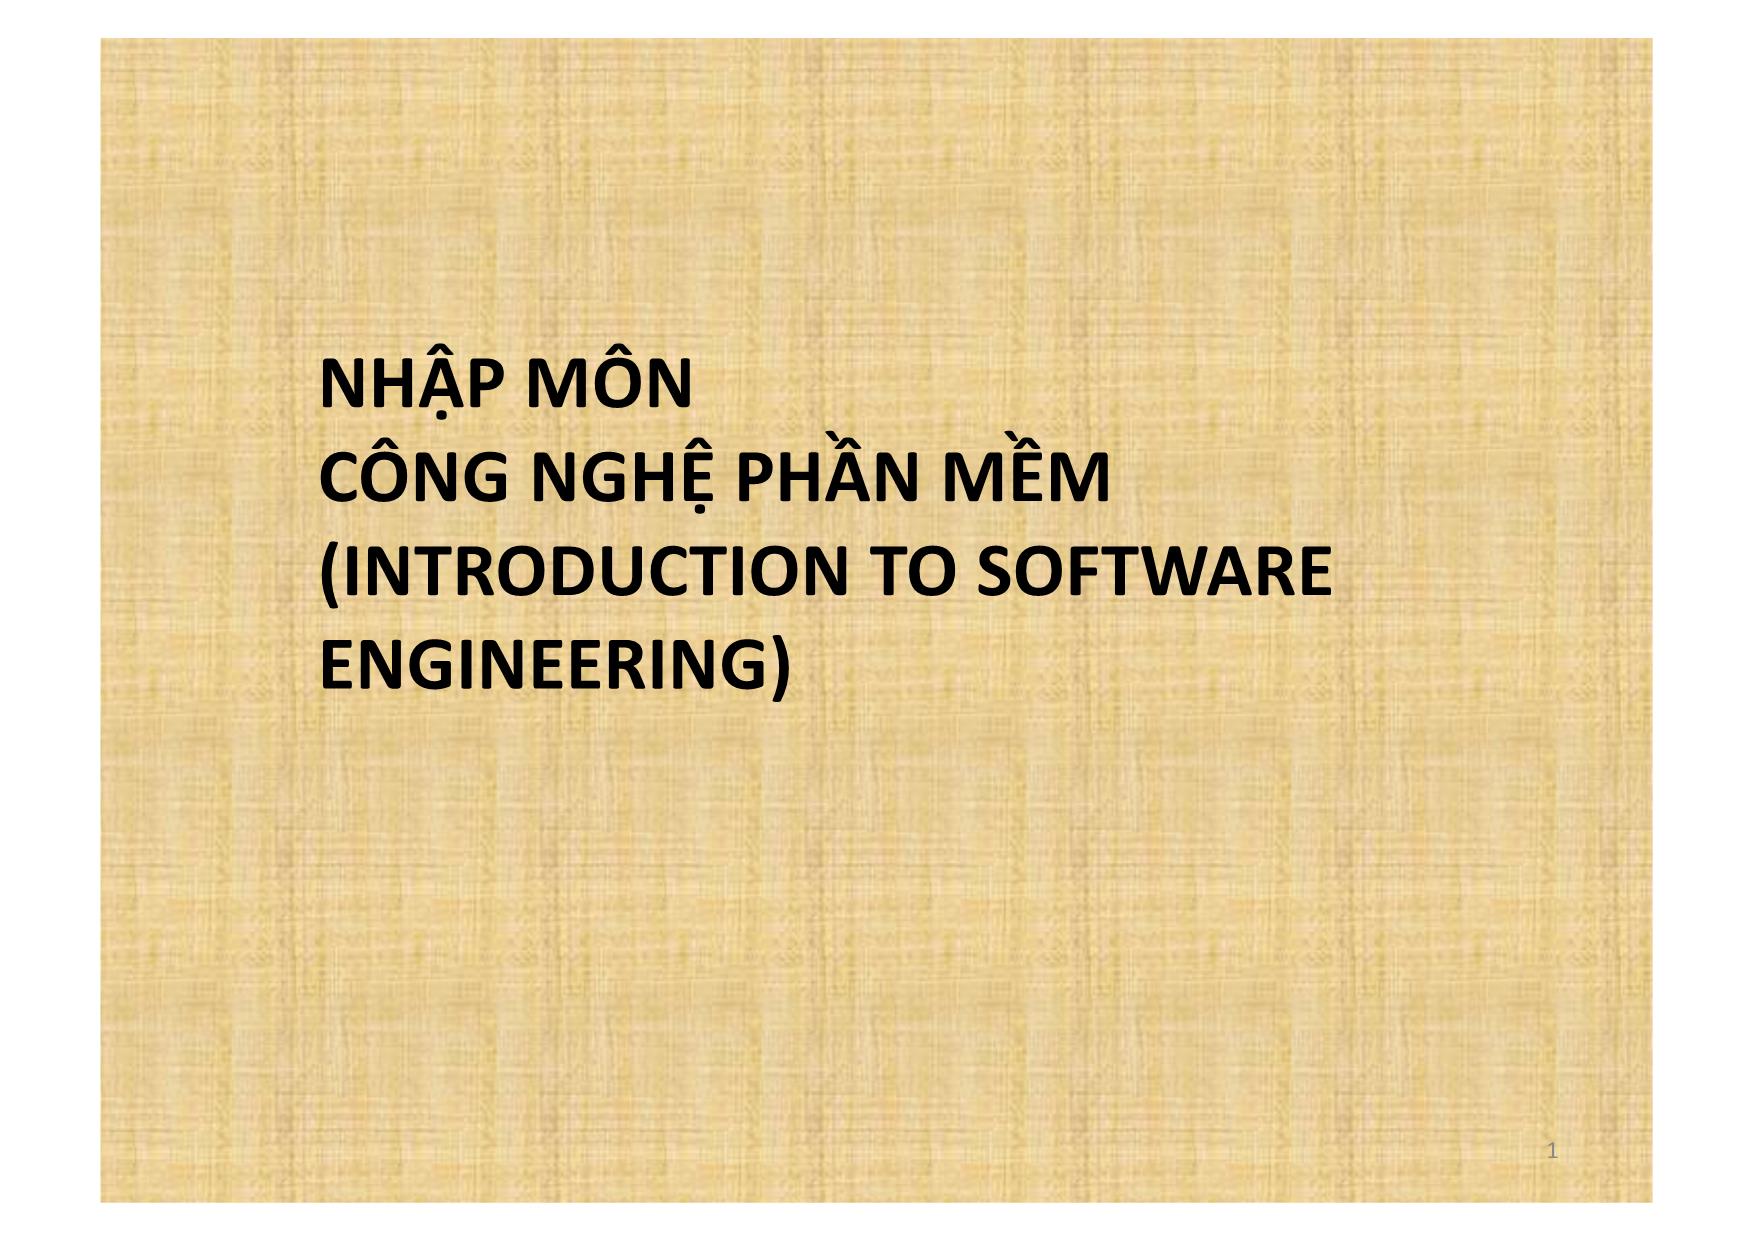 Bài giảng Nhập môn công nghệ phần mềm (Introduction to software engineering) - Chương mở đầu: Giới thiệu môn học trang 1